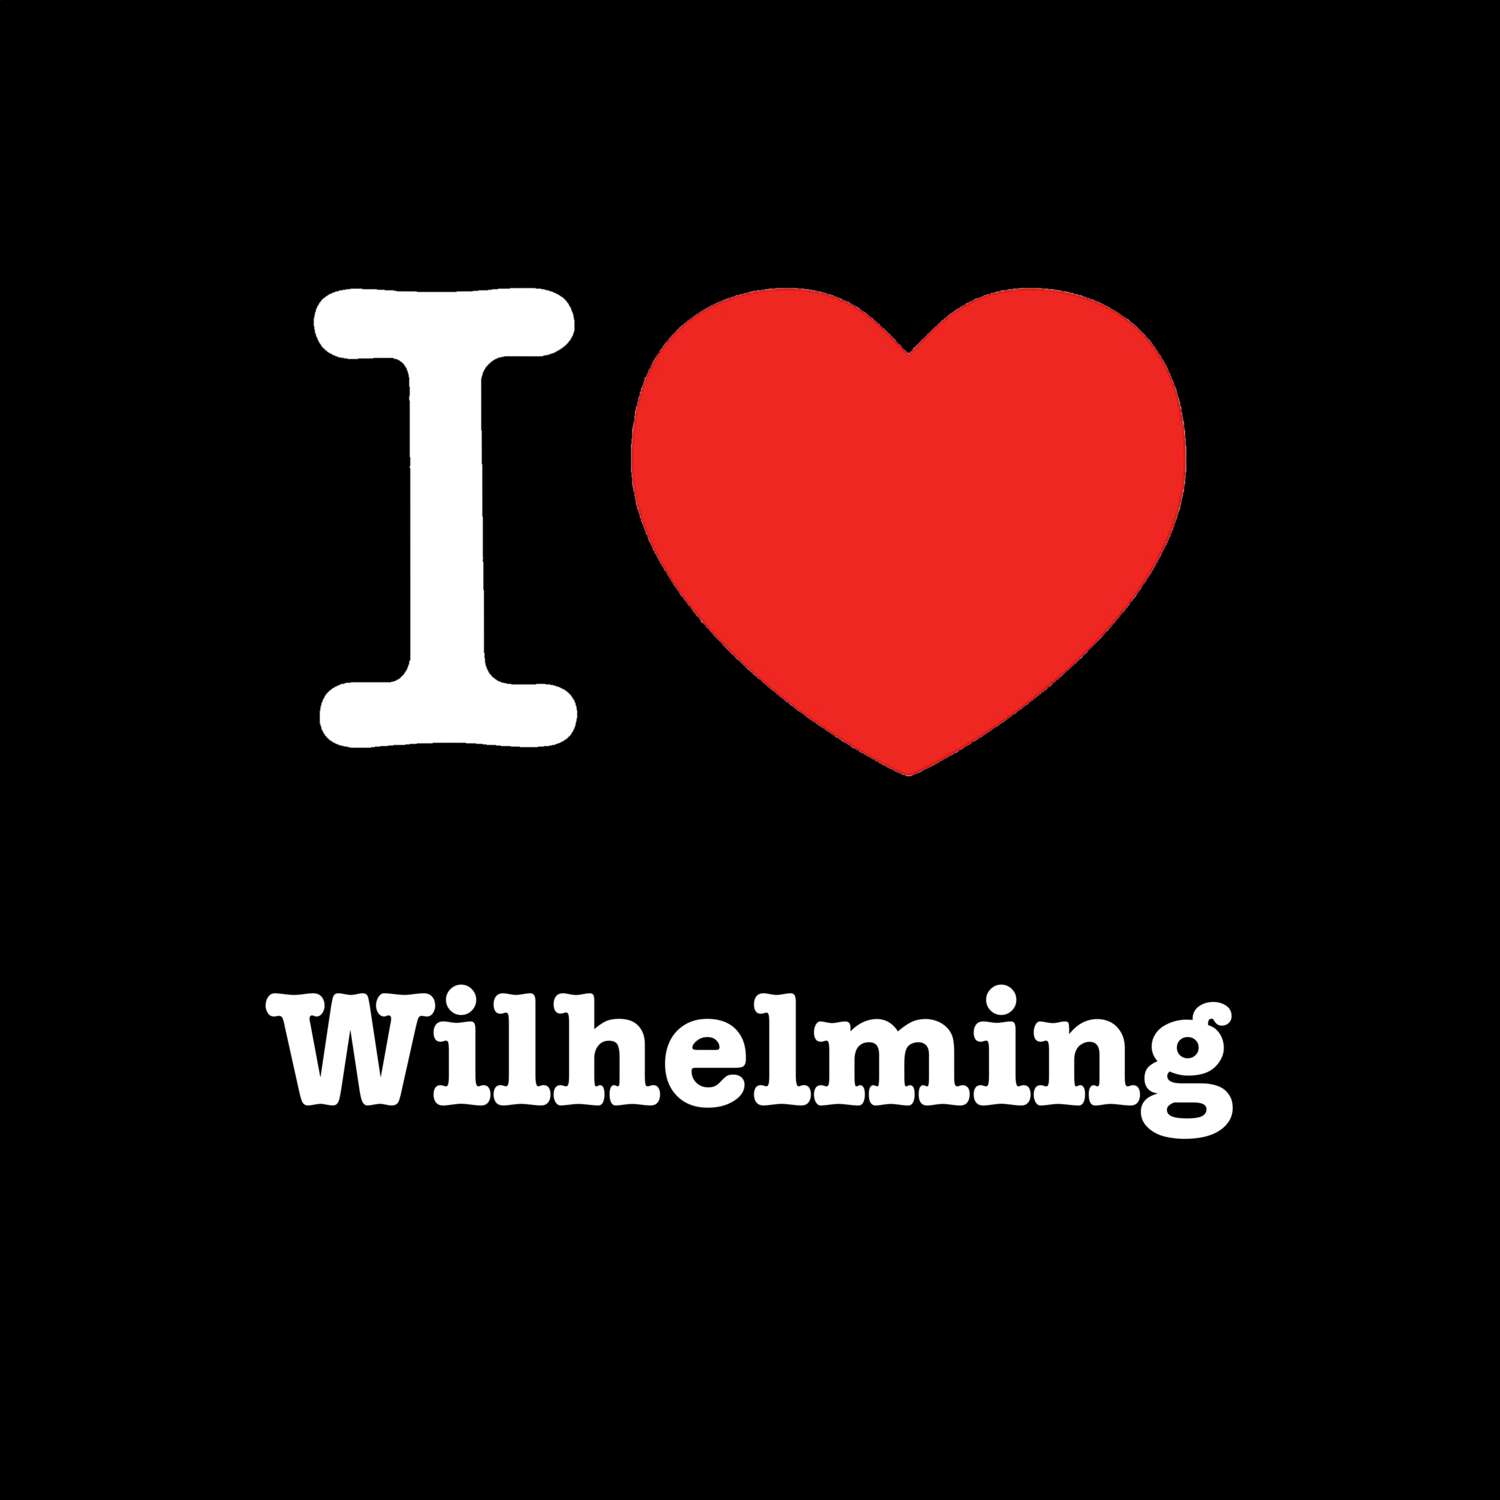 Wilhelming T-Shirt »I love«